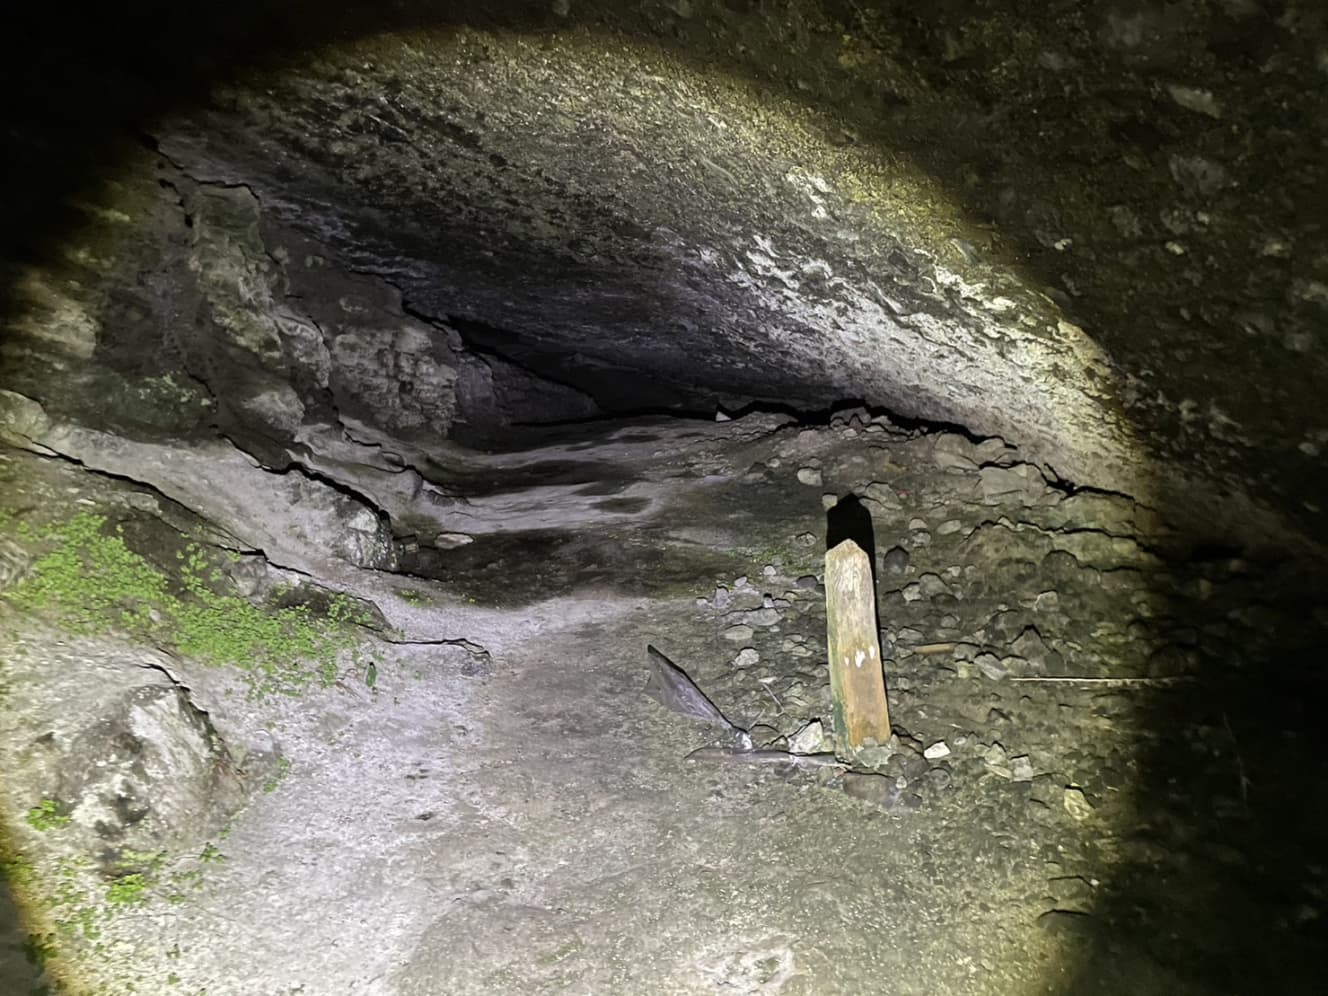 洞窟の中にあった謎の杭。洞窟は奥に進むほど天井が低くなっていた。また、奥には天井に大量のコウモリがいたため、最奥にたどり着けなかったという